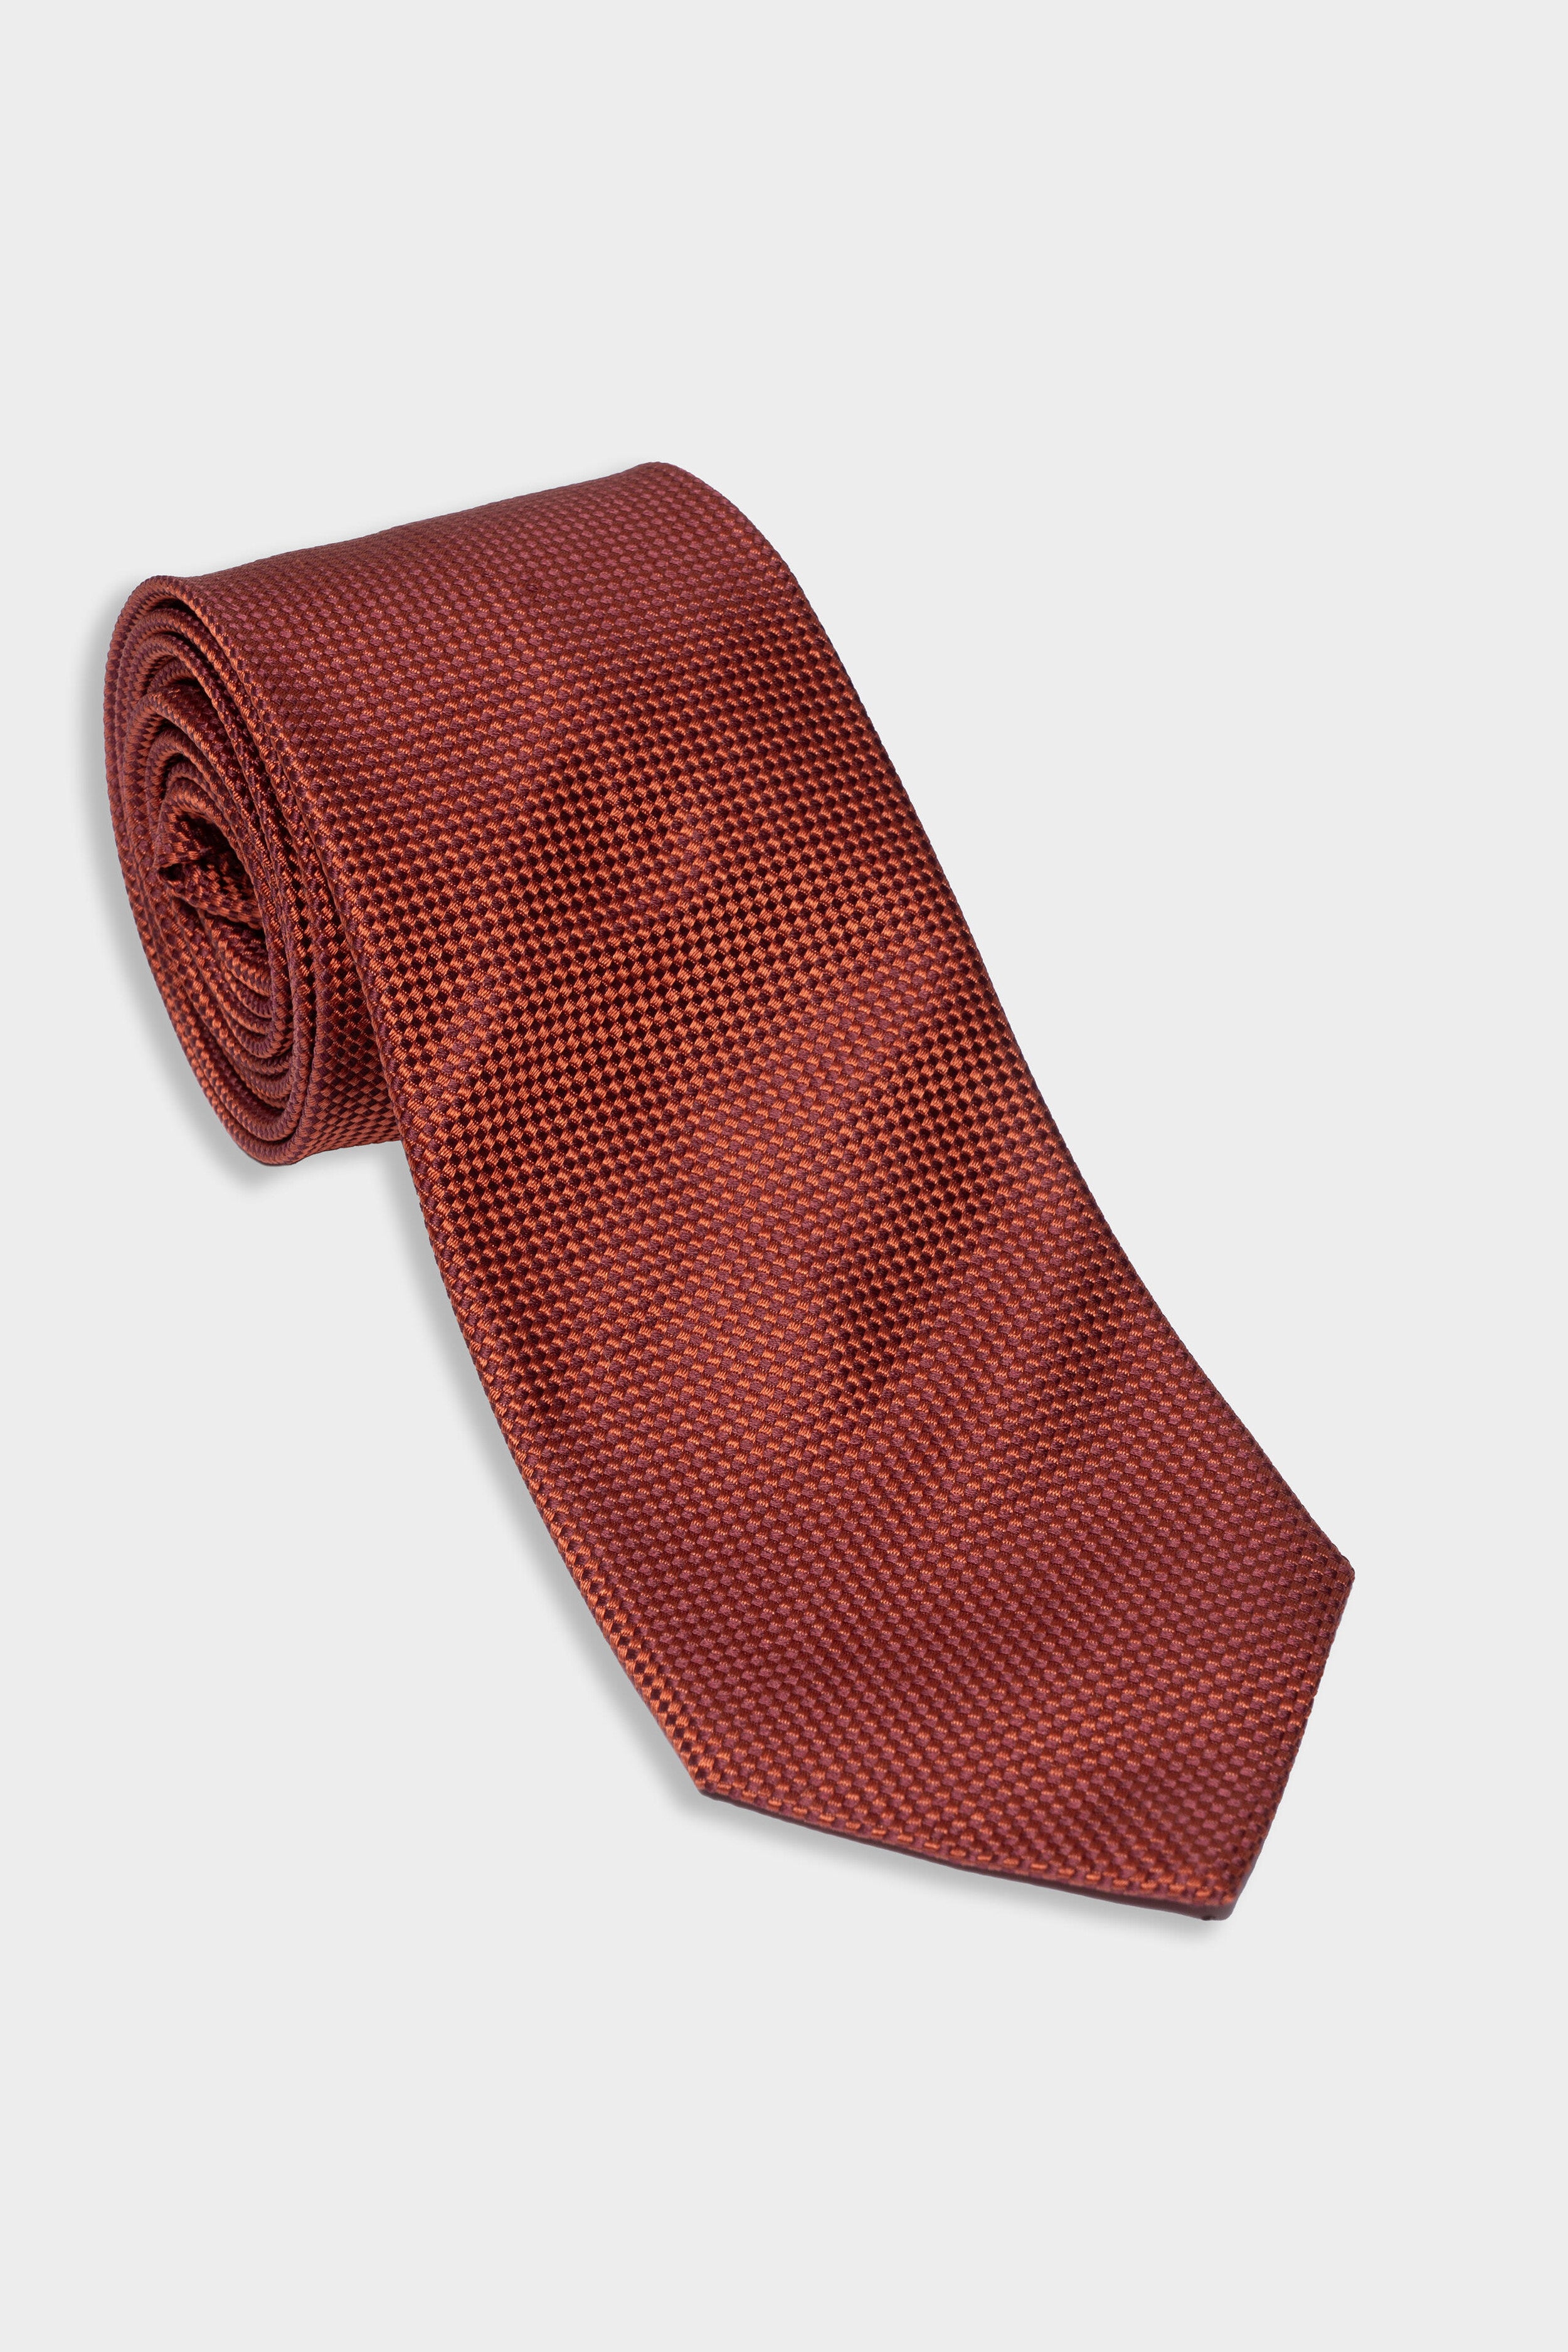 Cravatta in seta microfantasia - ROSSO